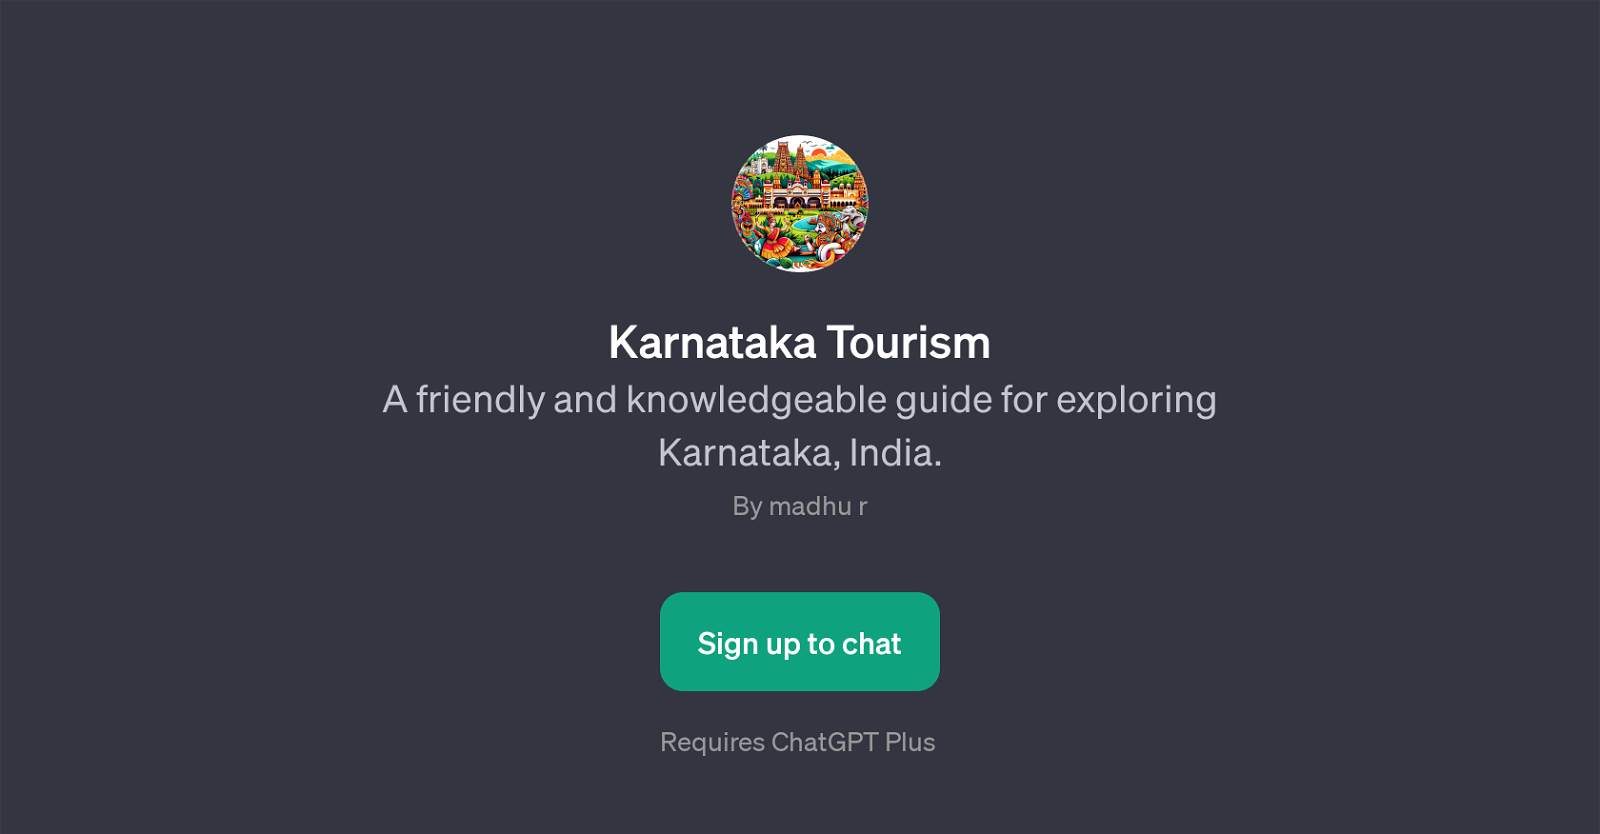 Karnataka Tourism website